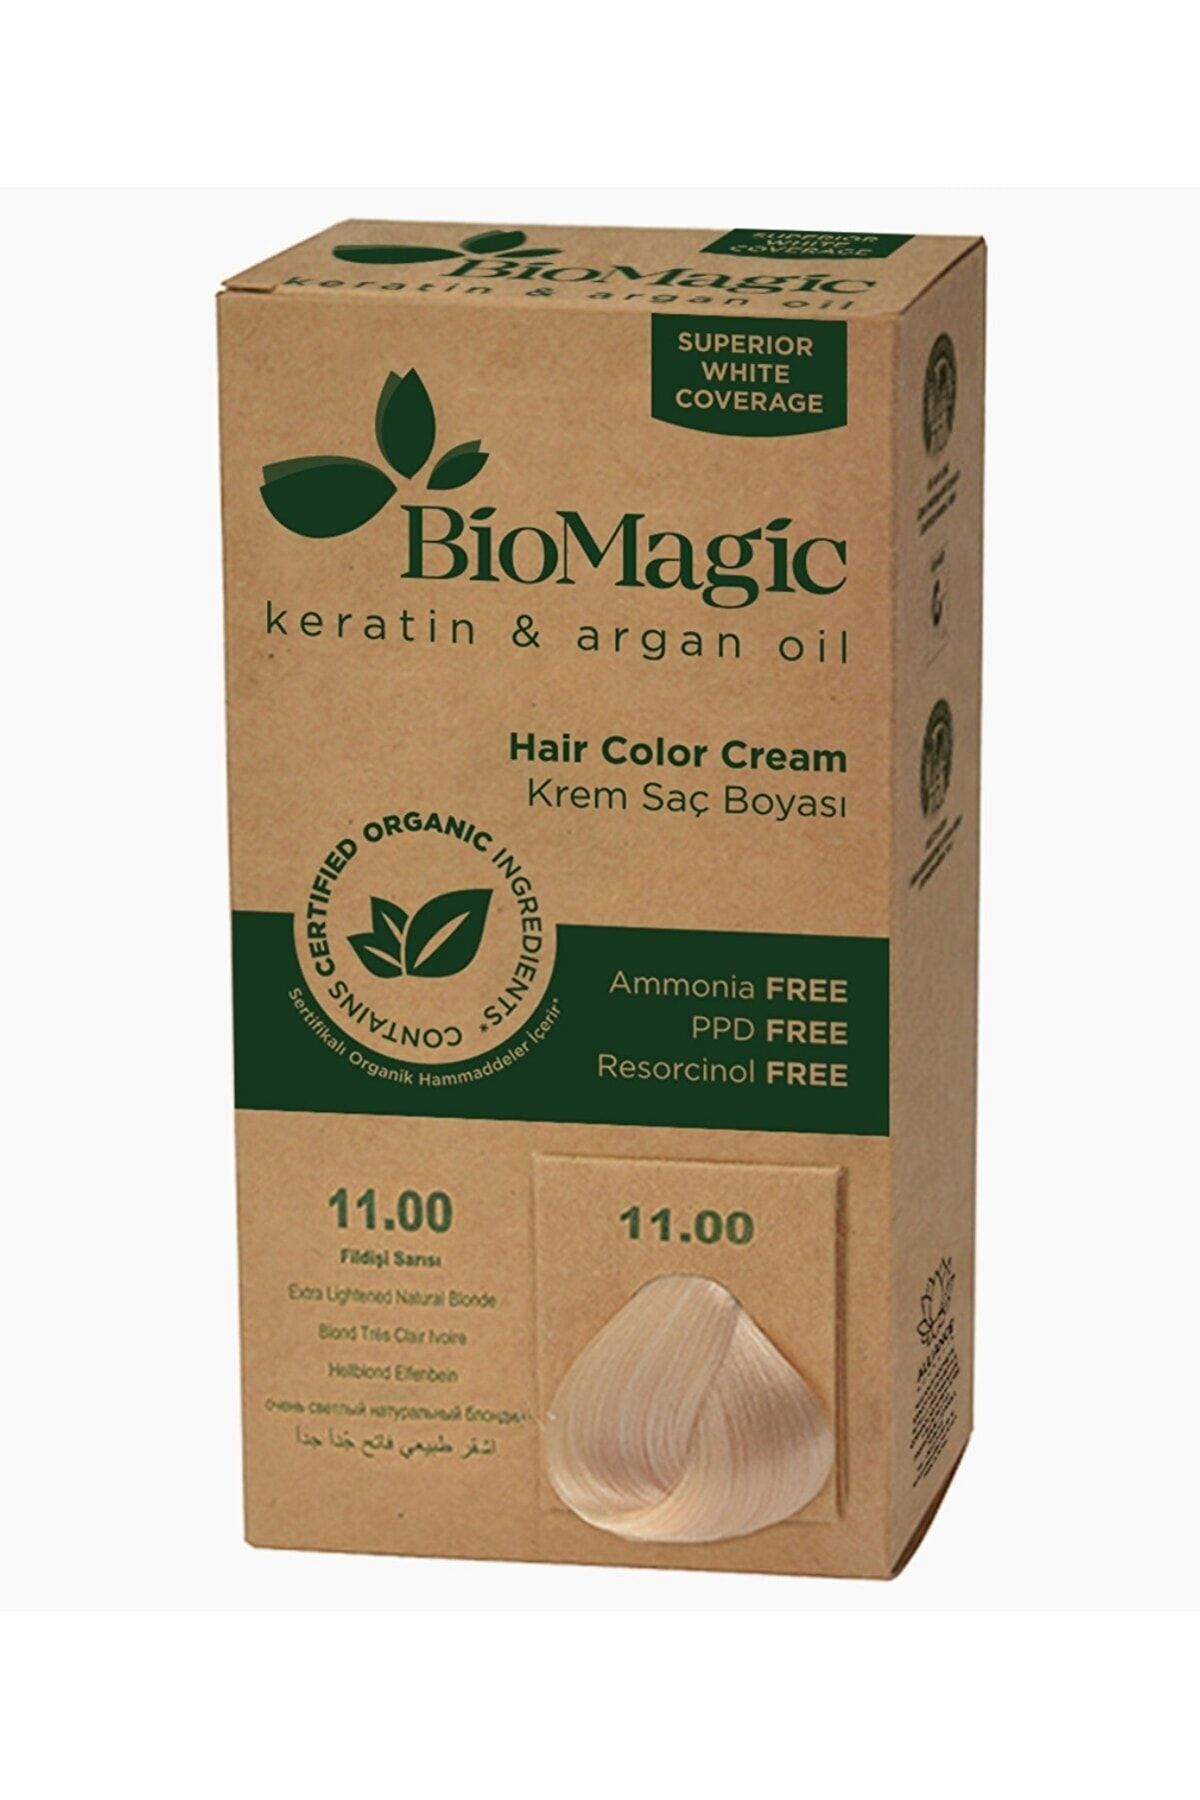 BioMagic Doğal Organic Kalıcı Krem Saç Boyası Fildişi Sarısı**no. 11.00//60ml,.